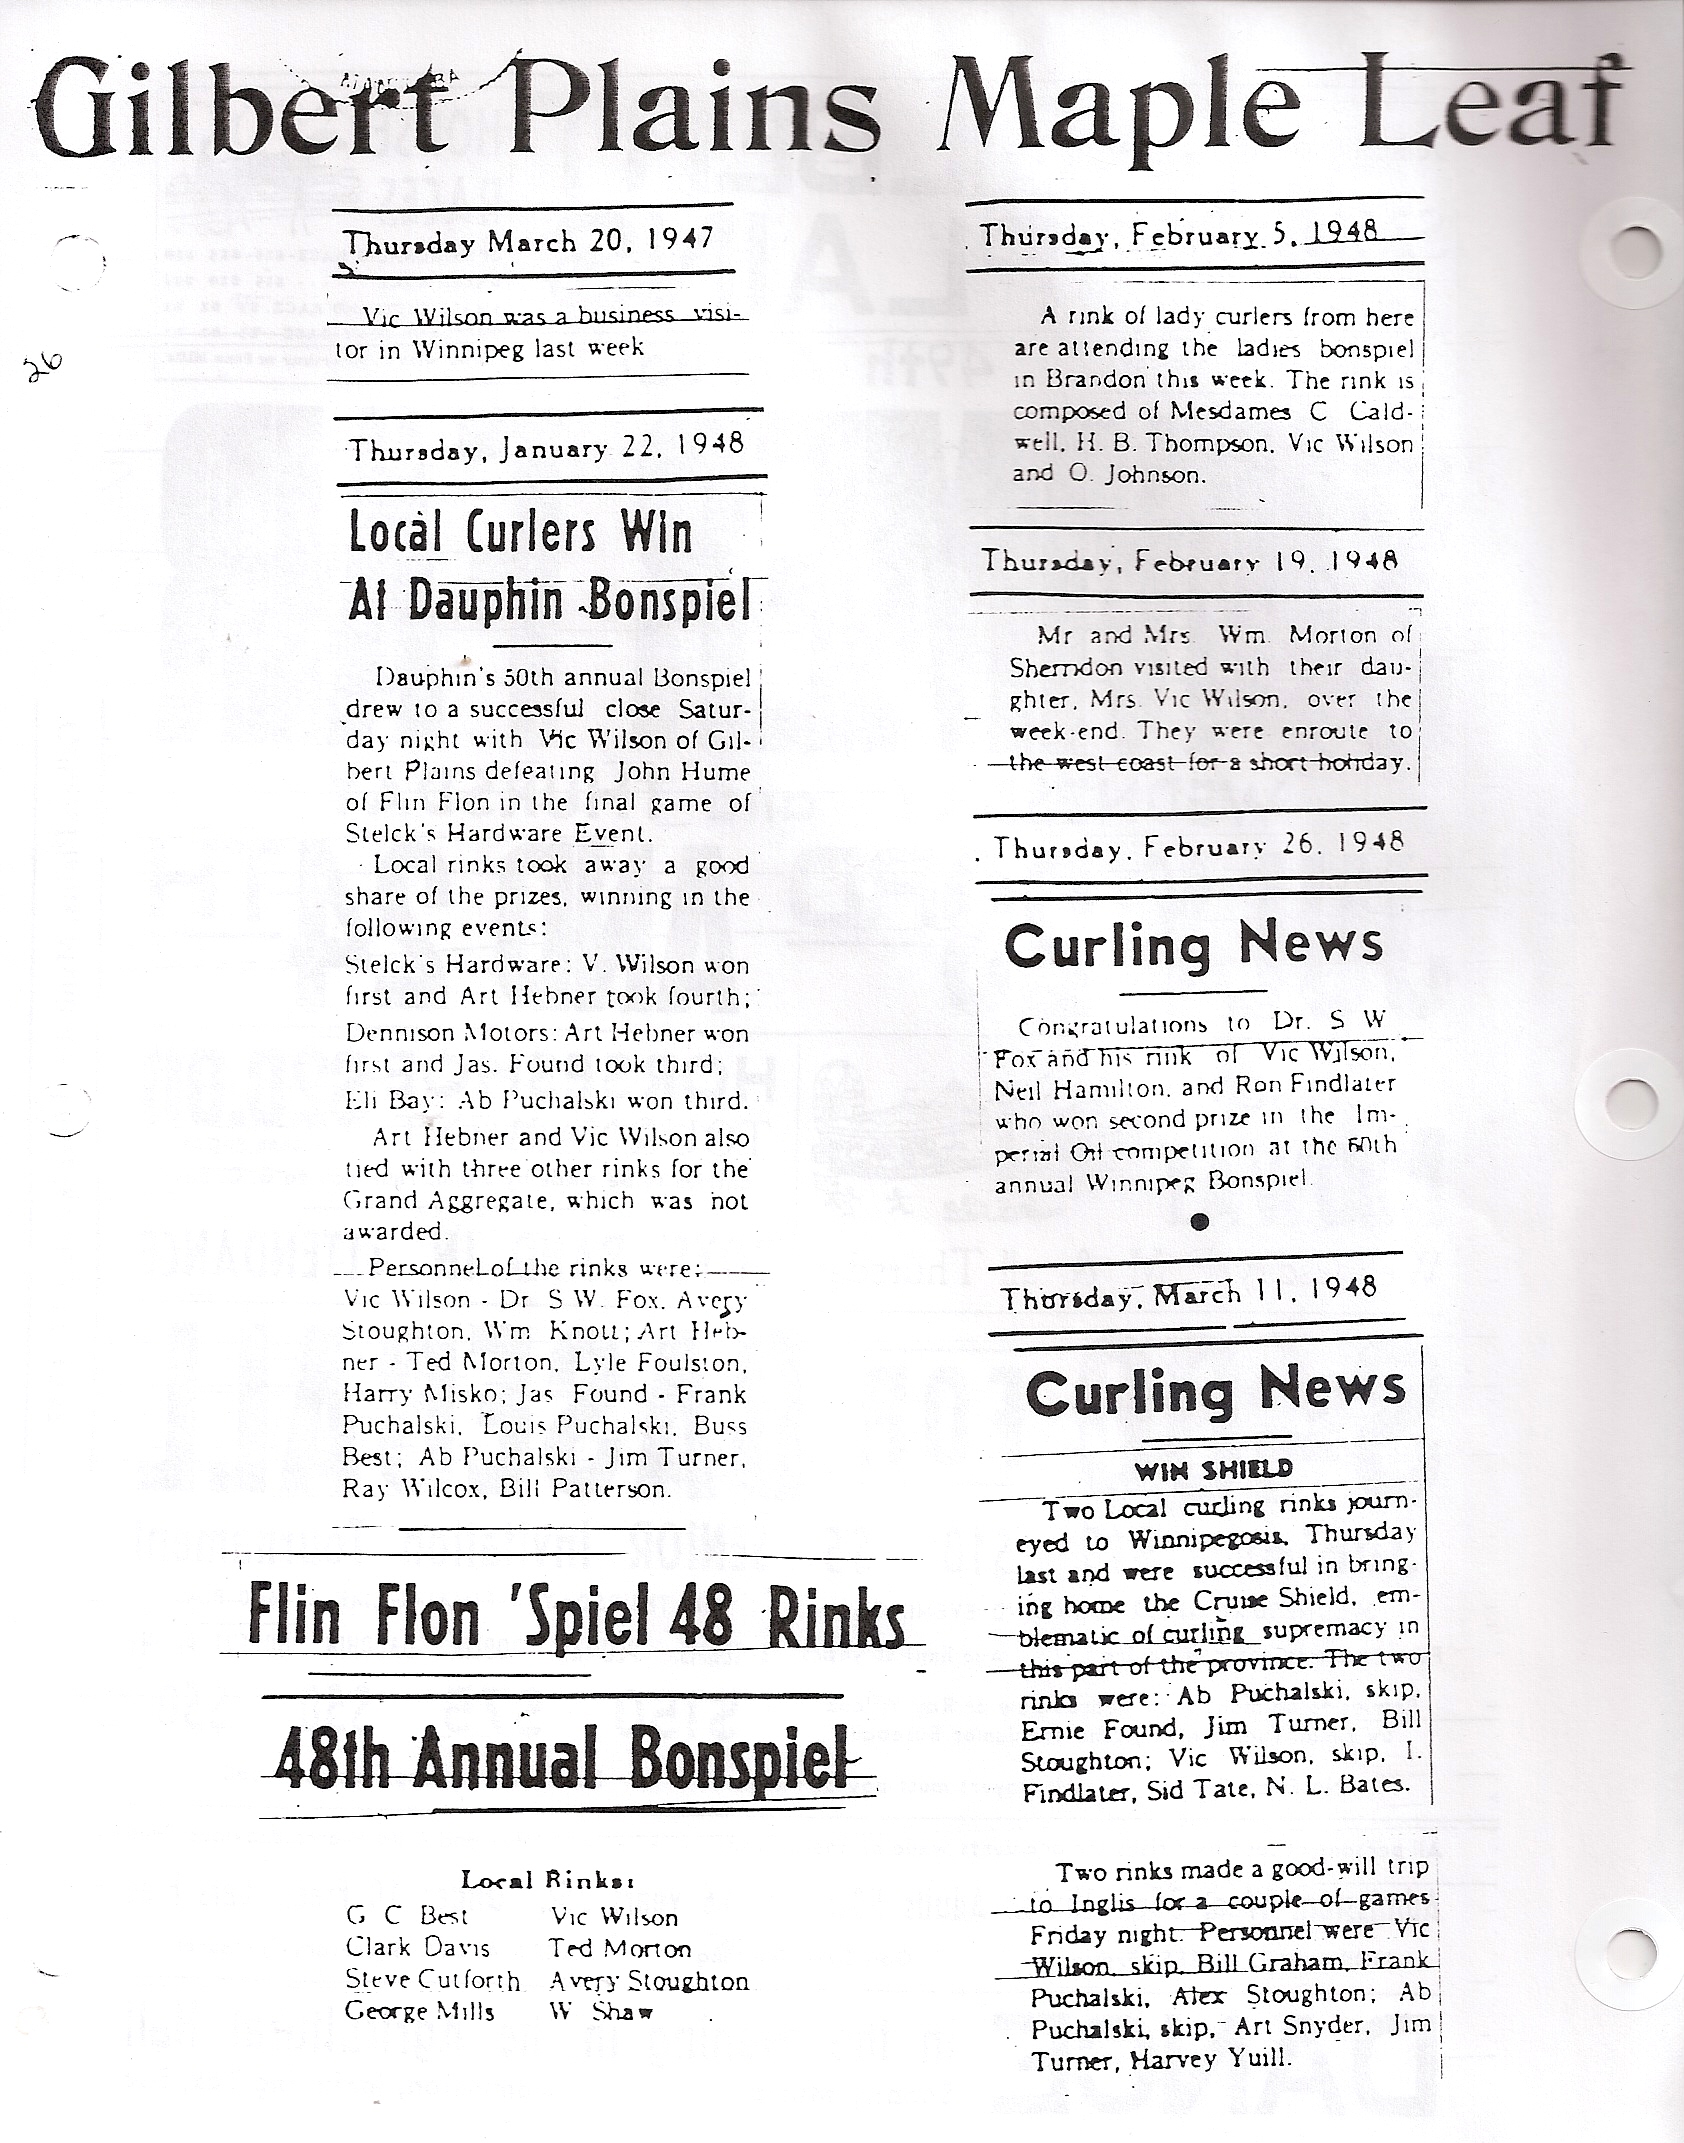 1-vics curling news 1947-48